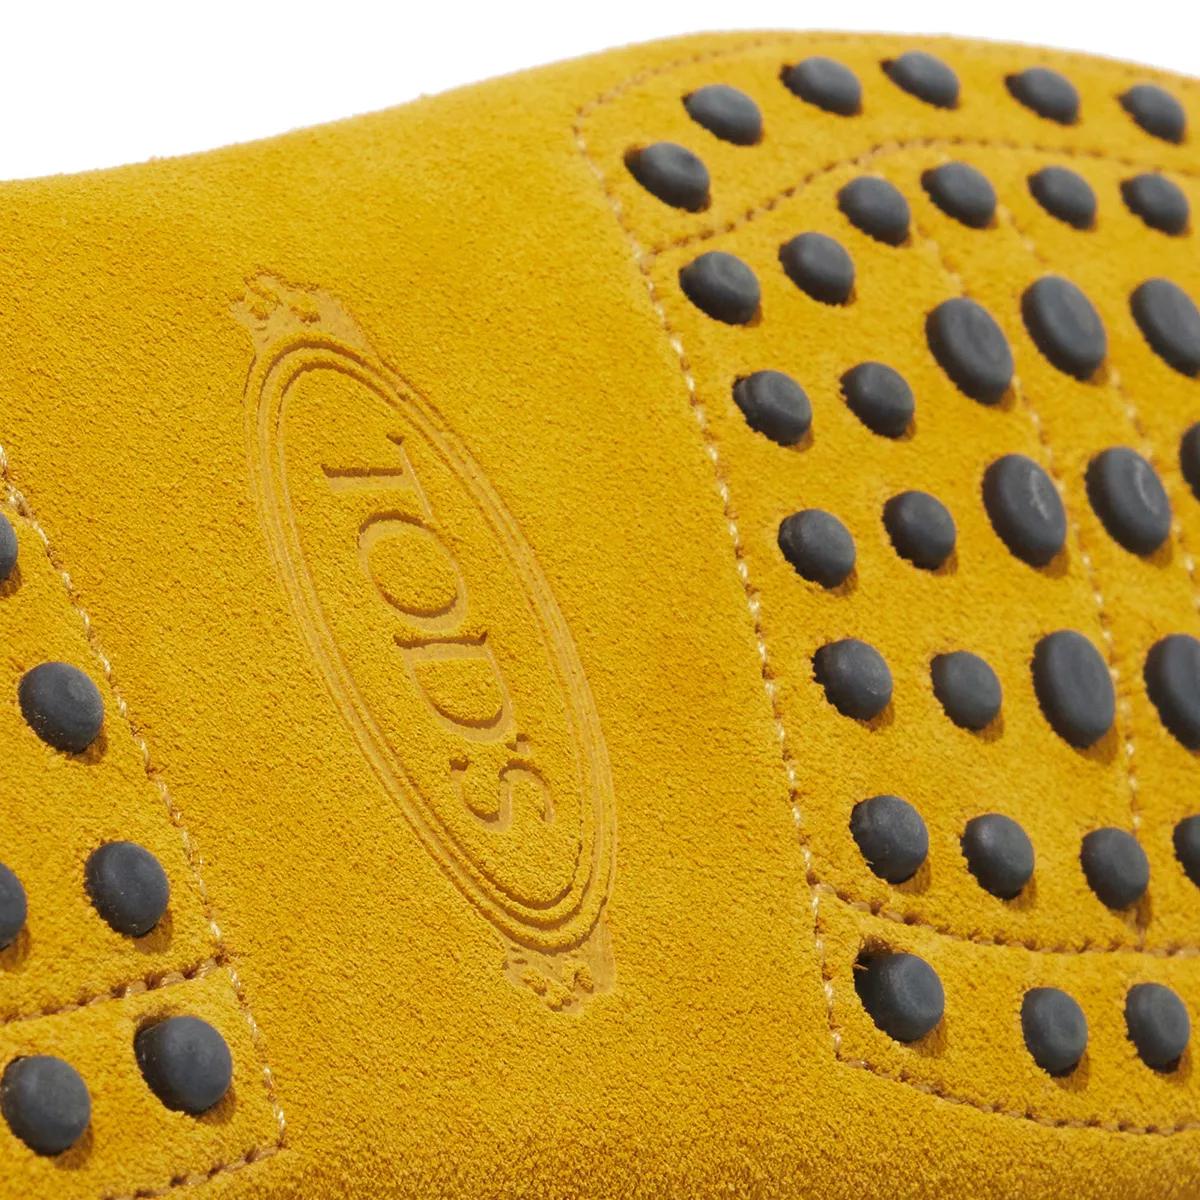 Tod's Loafers & Ballerinas - Gommino Driving Shoes in Suede - Gr. 38 (EU) - in Gelb - für Damen von TOD'S